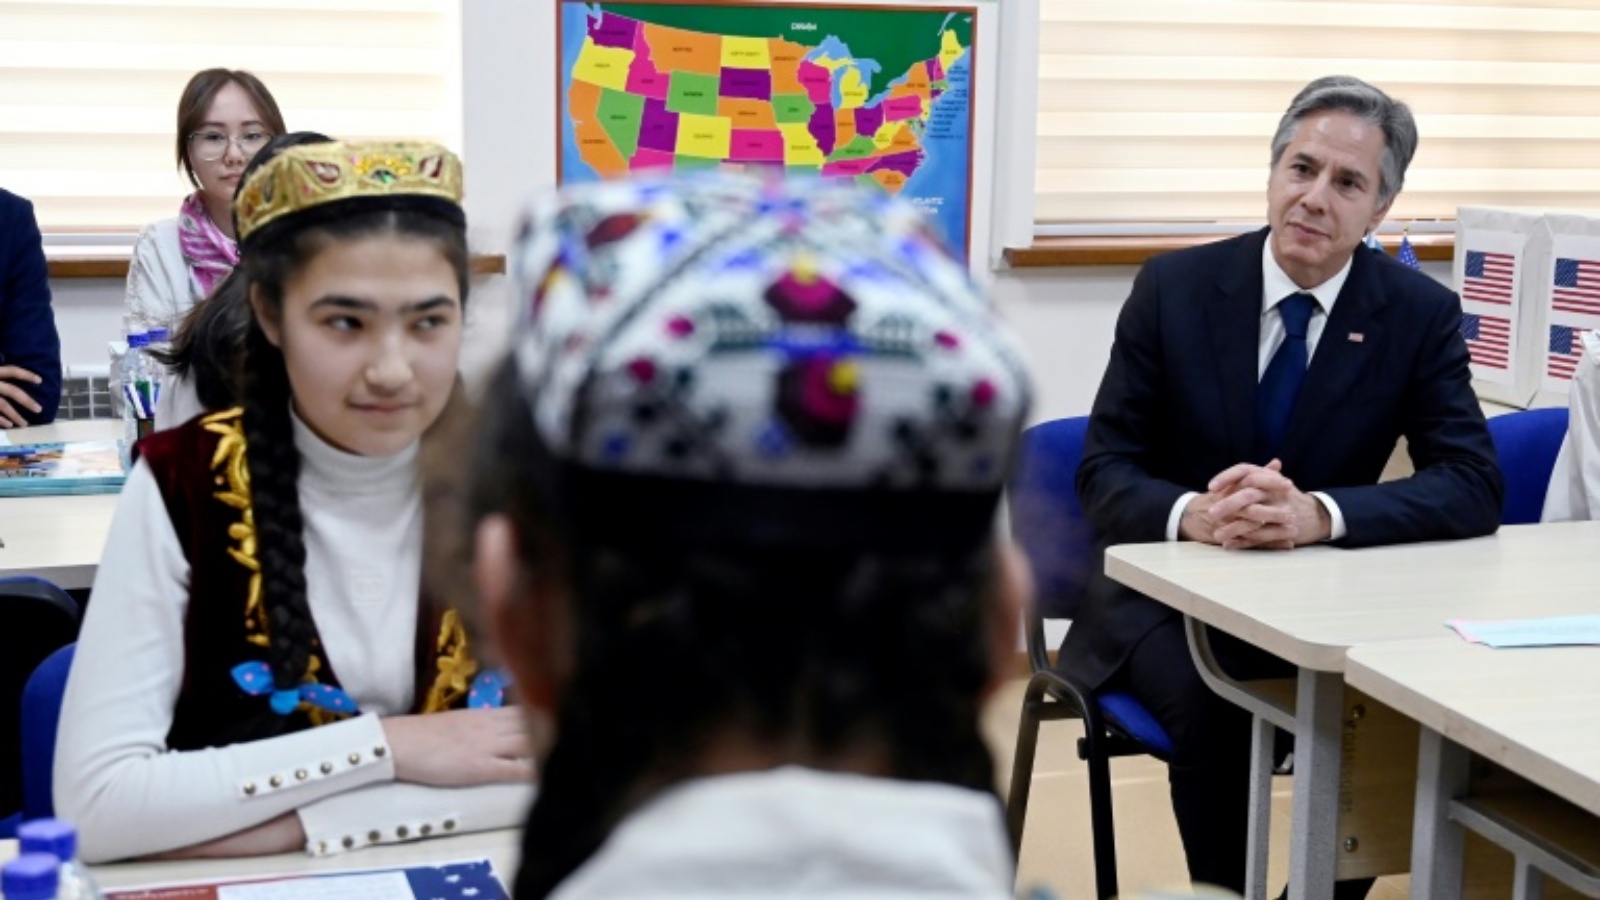 وزير الخارجية الأميركي أنتوني بلينكن، إلى اليمين، التقى بطلاب يتعلمون اللغة الإنكليزية في جامعة أوزبكستان الحكومية للغات العالمية